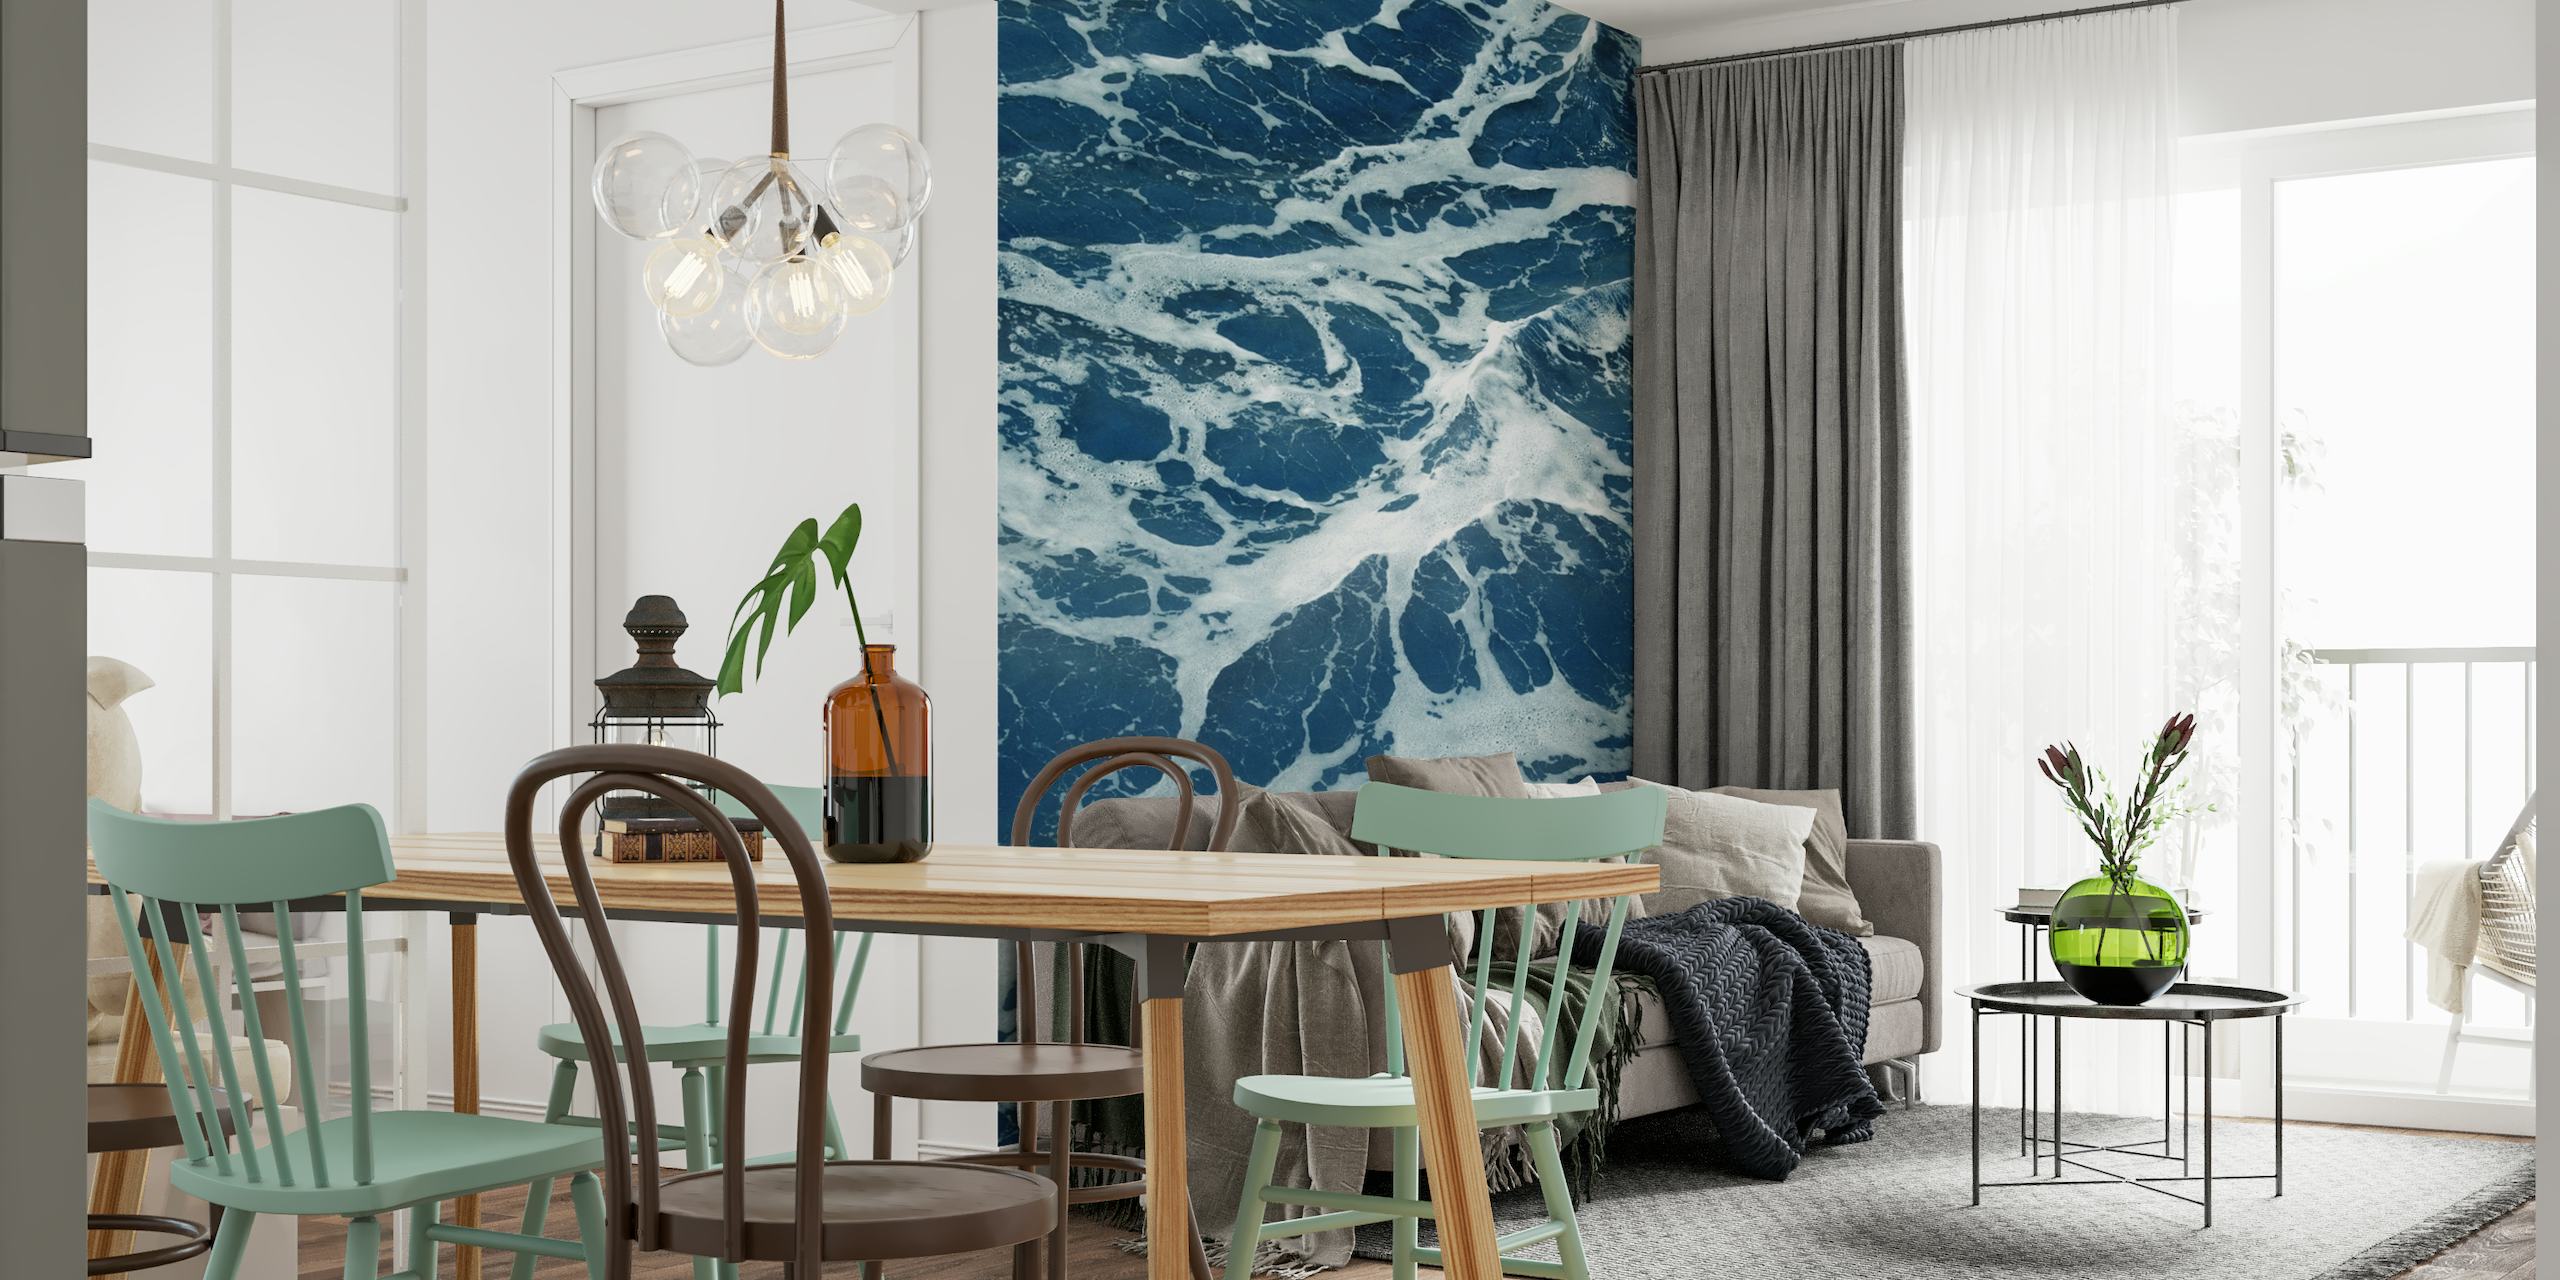 Papel de parede mural de ondas do Oceano Atlântico com espuma branca espumosa em águas azuis profundas.